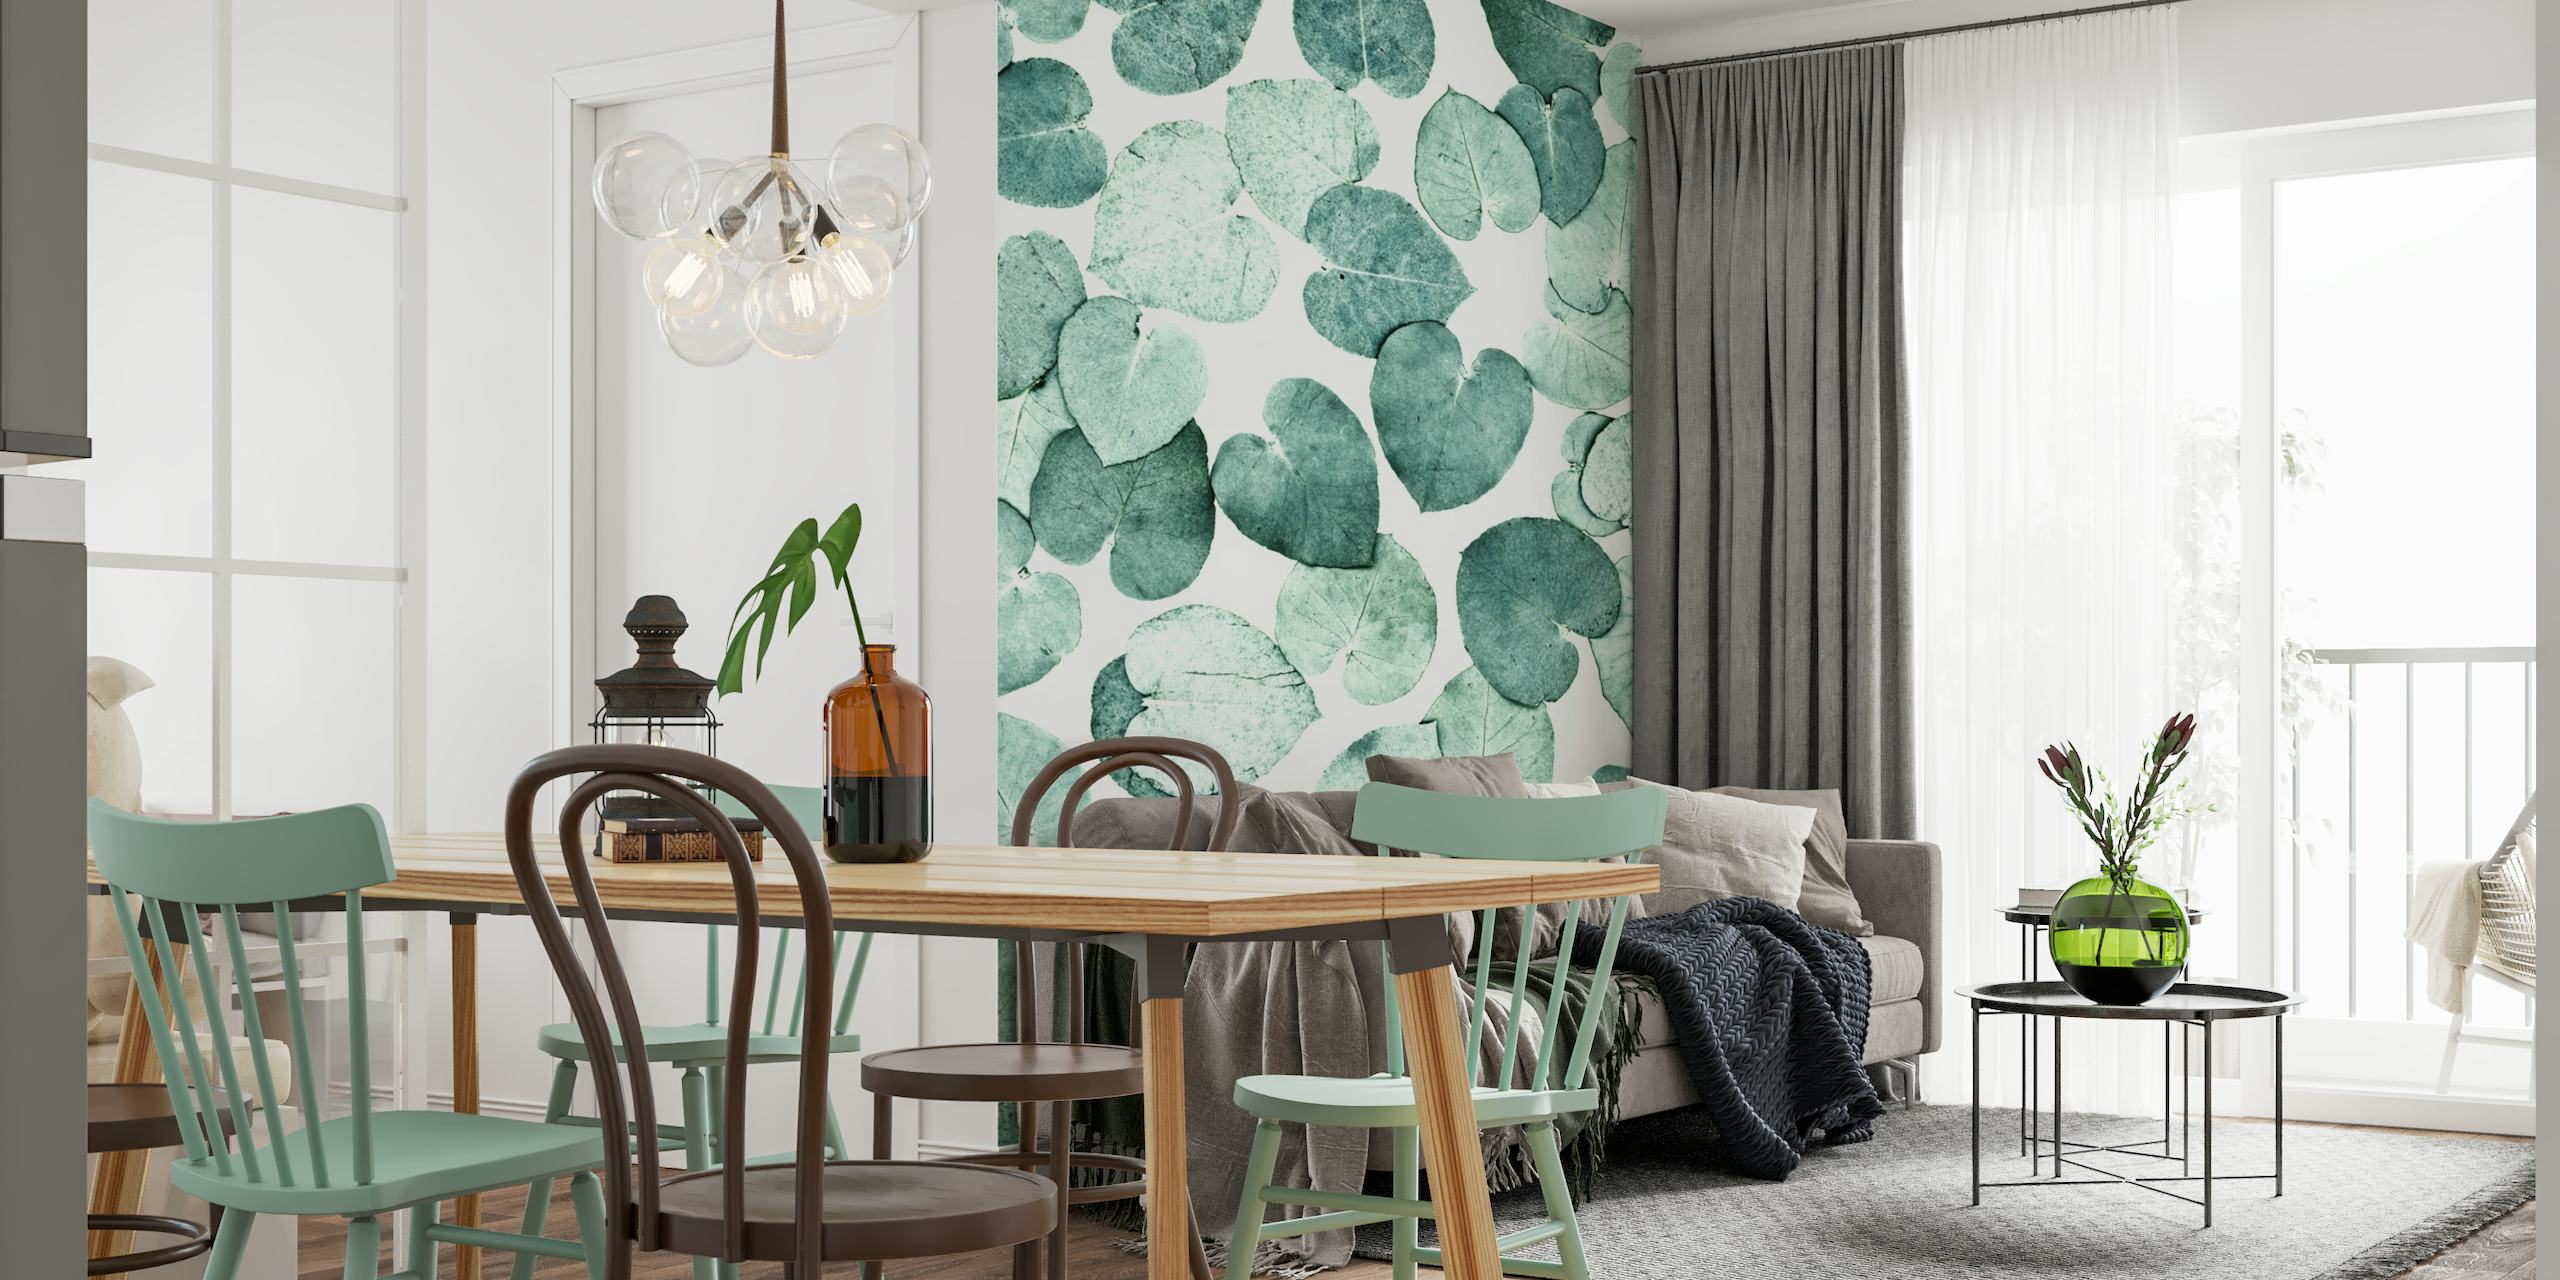 Fotomural con estampado de hojas verdes para un diseño interior tranquilo